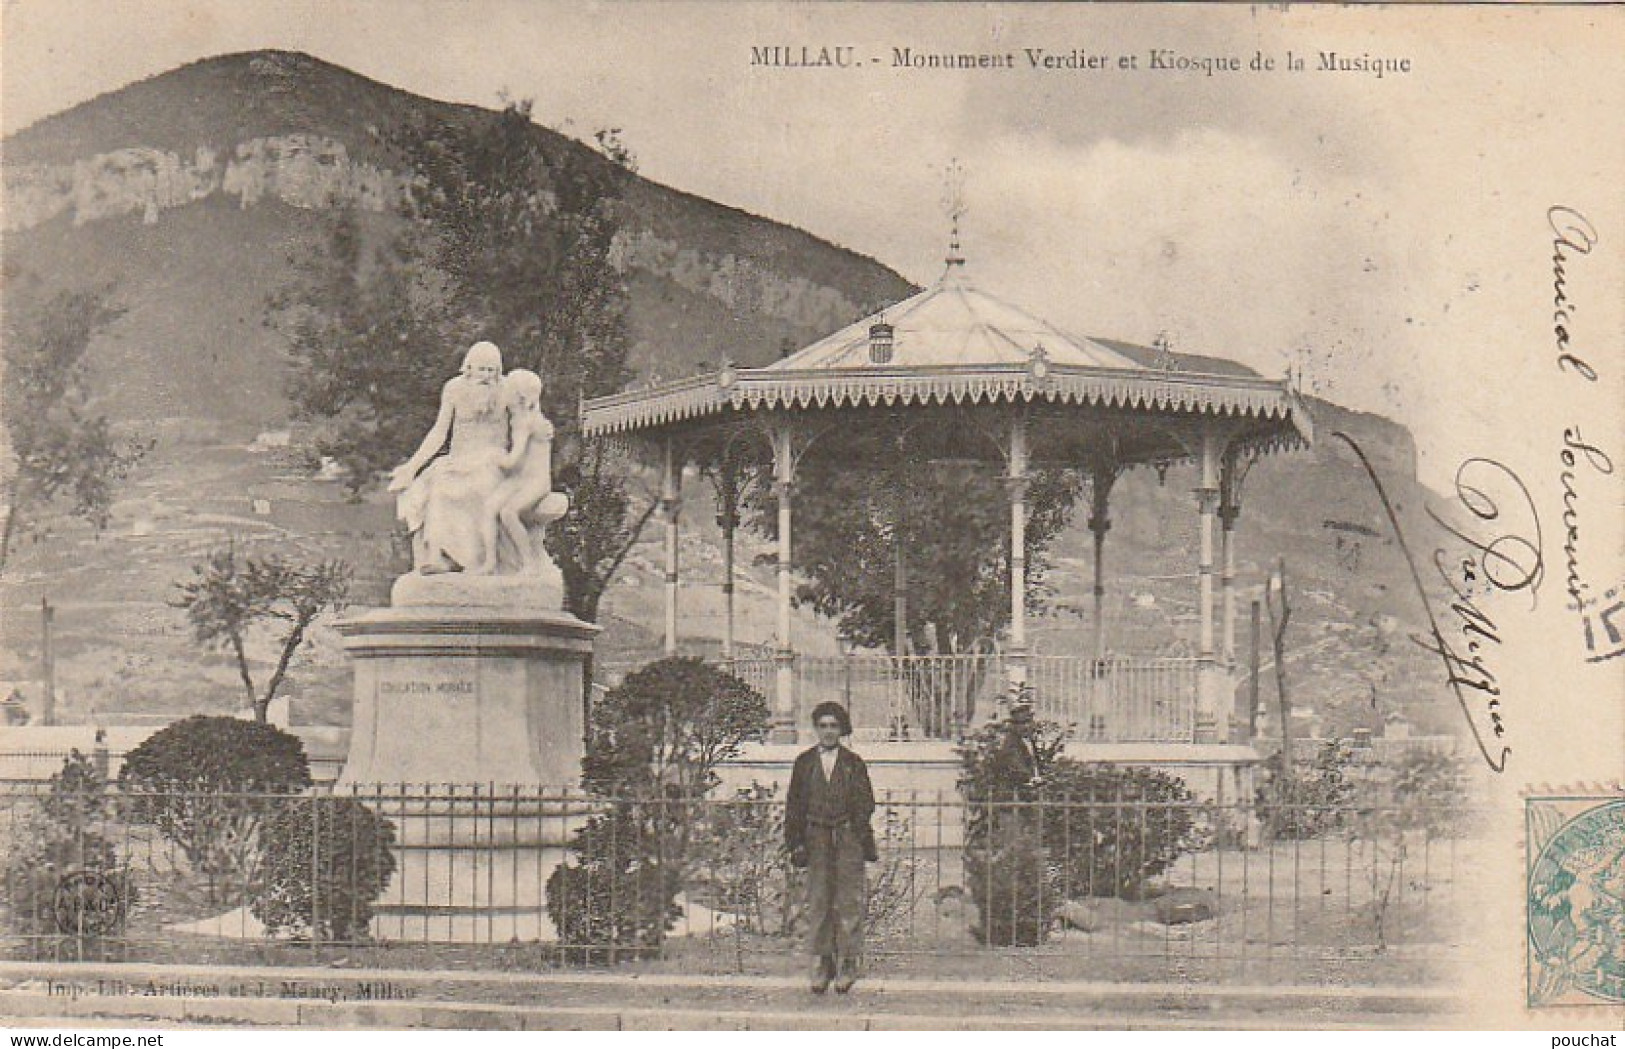 WA 24-(12) MILLAU - MONUMENT VERDIER ET KIOSQUE DE LA MUSIQUE - 2 SCANS - Millau